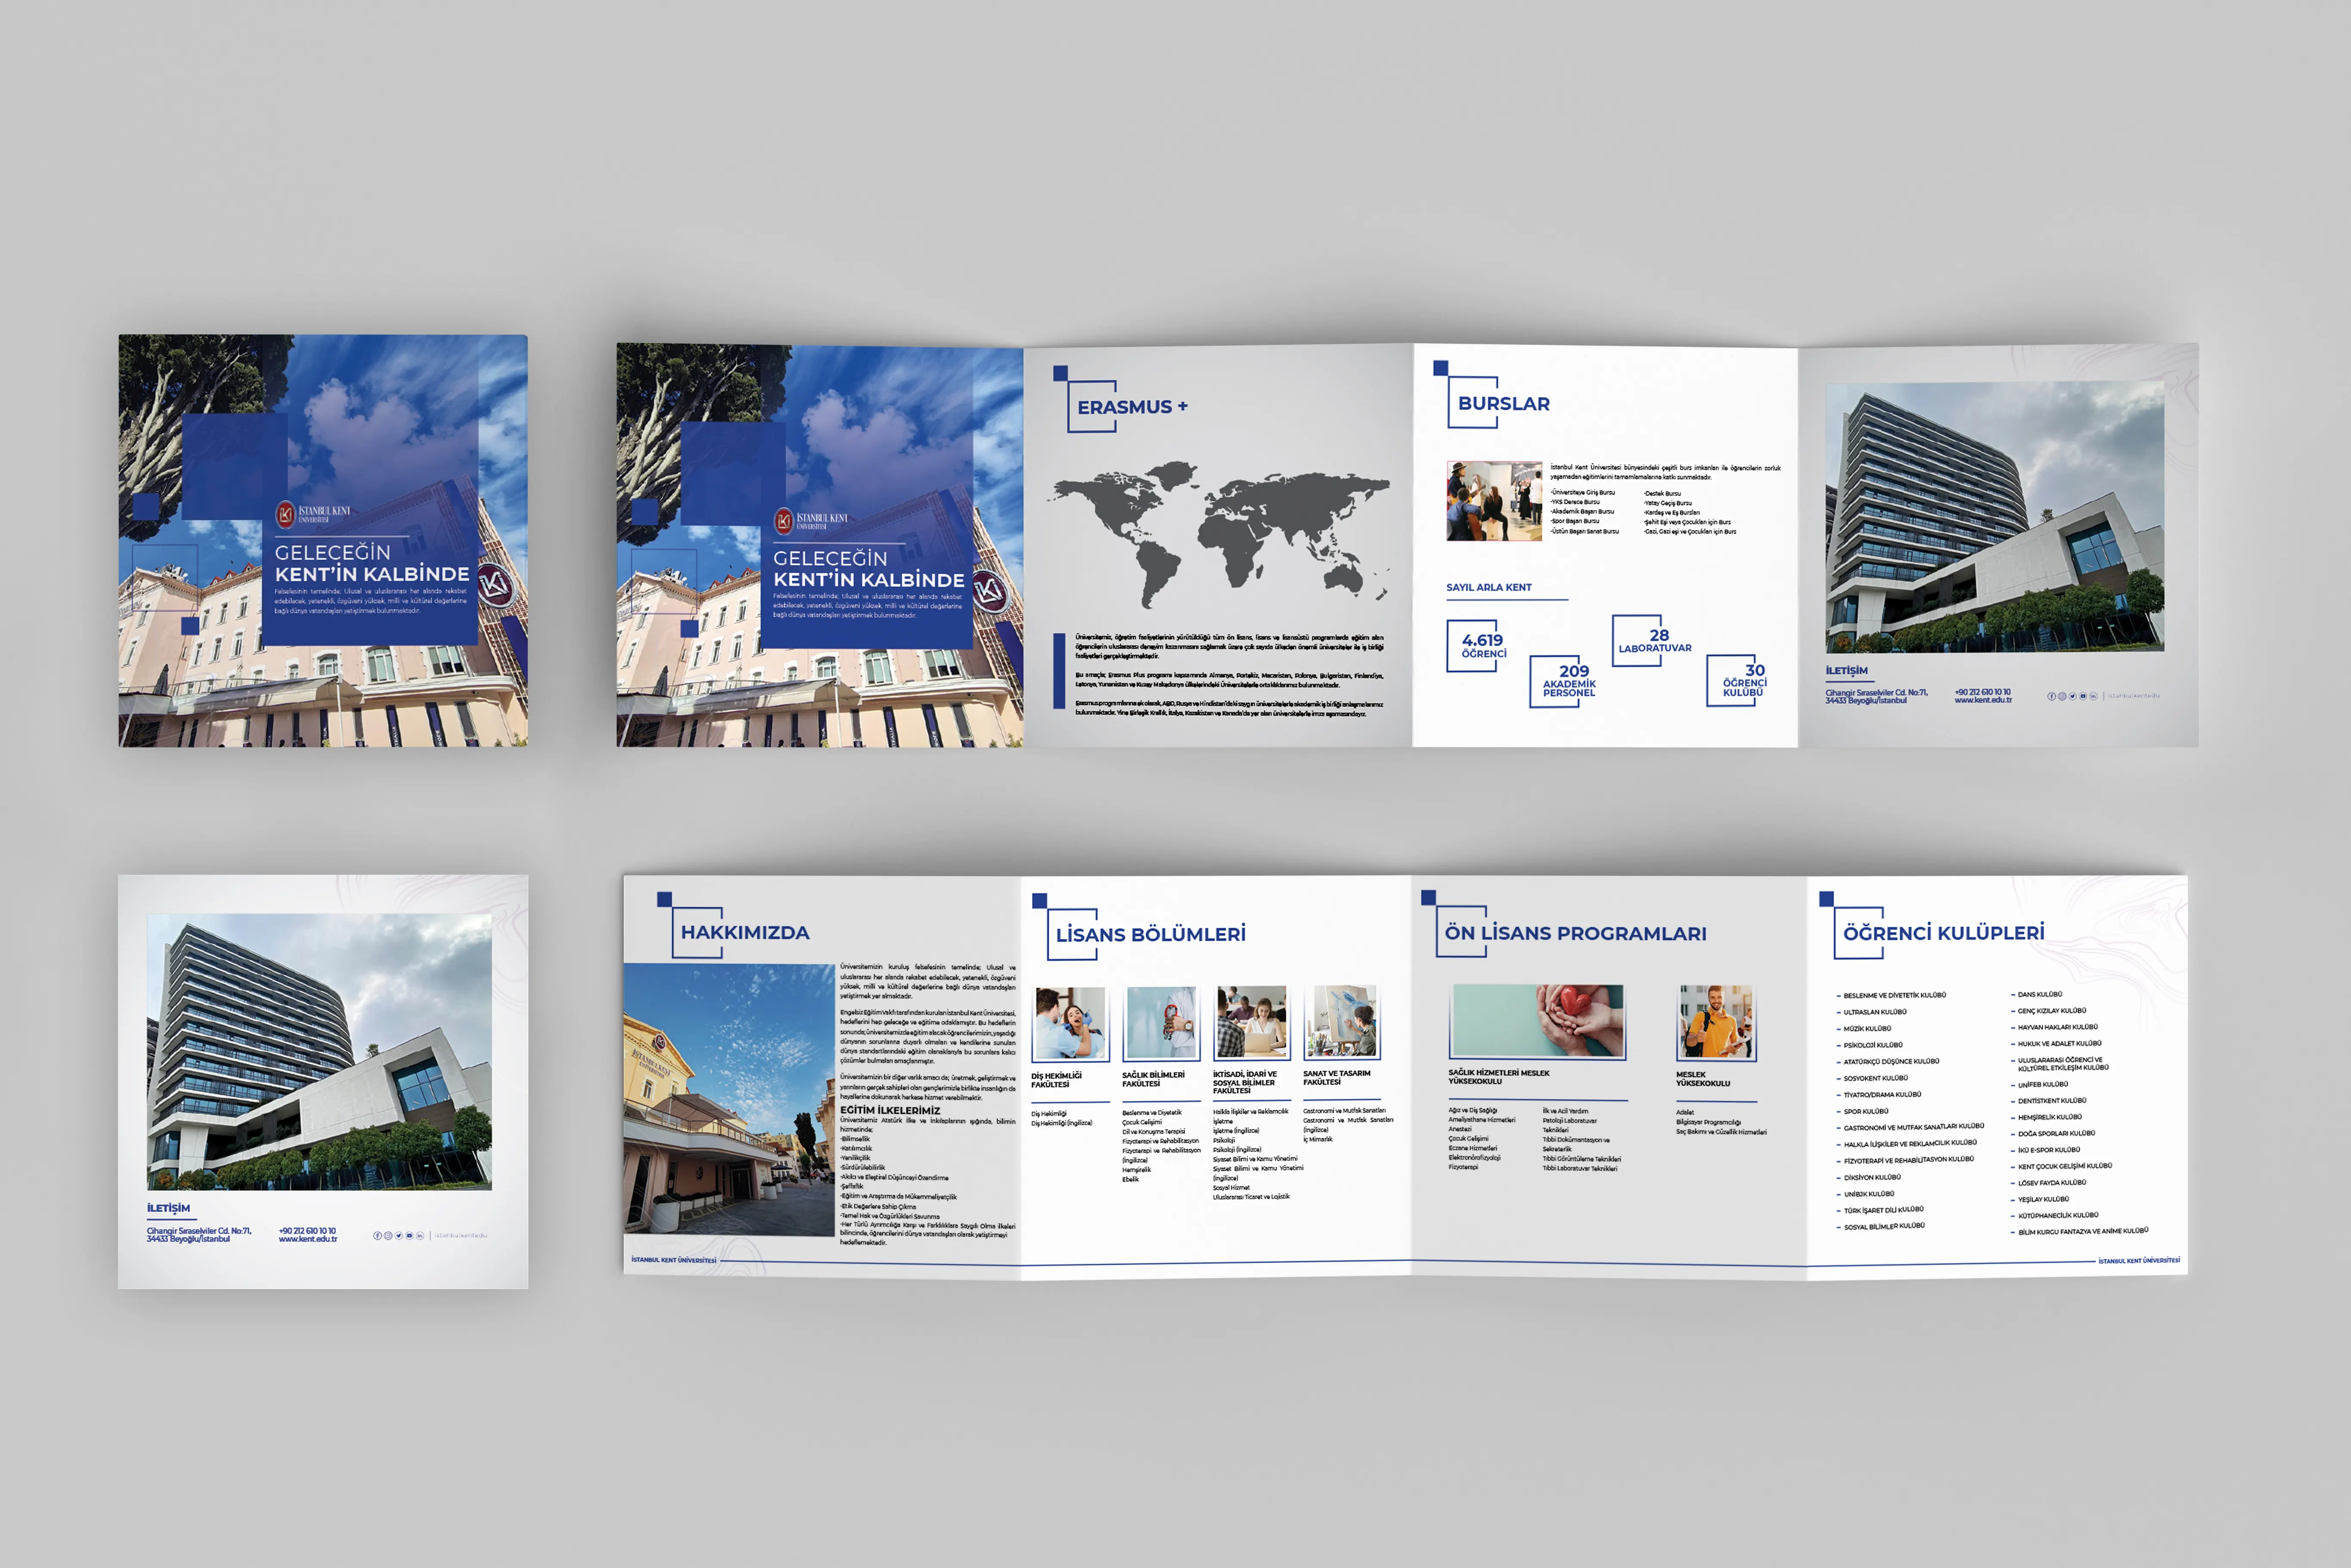 Caner Yılmaz İstanbul Kent Üniversitesi broşür,Katalog Tasarımı, E-katalog Tasarımı, Broşür Tasarımı, Art Director, Ürün Kataloğu, Faaliyet Rapor Tasarımı, Ürün Tanıtım Tasarımı, Firma Tanıtım broşürü Tasarımı, Sunum Tasarımı